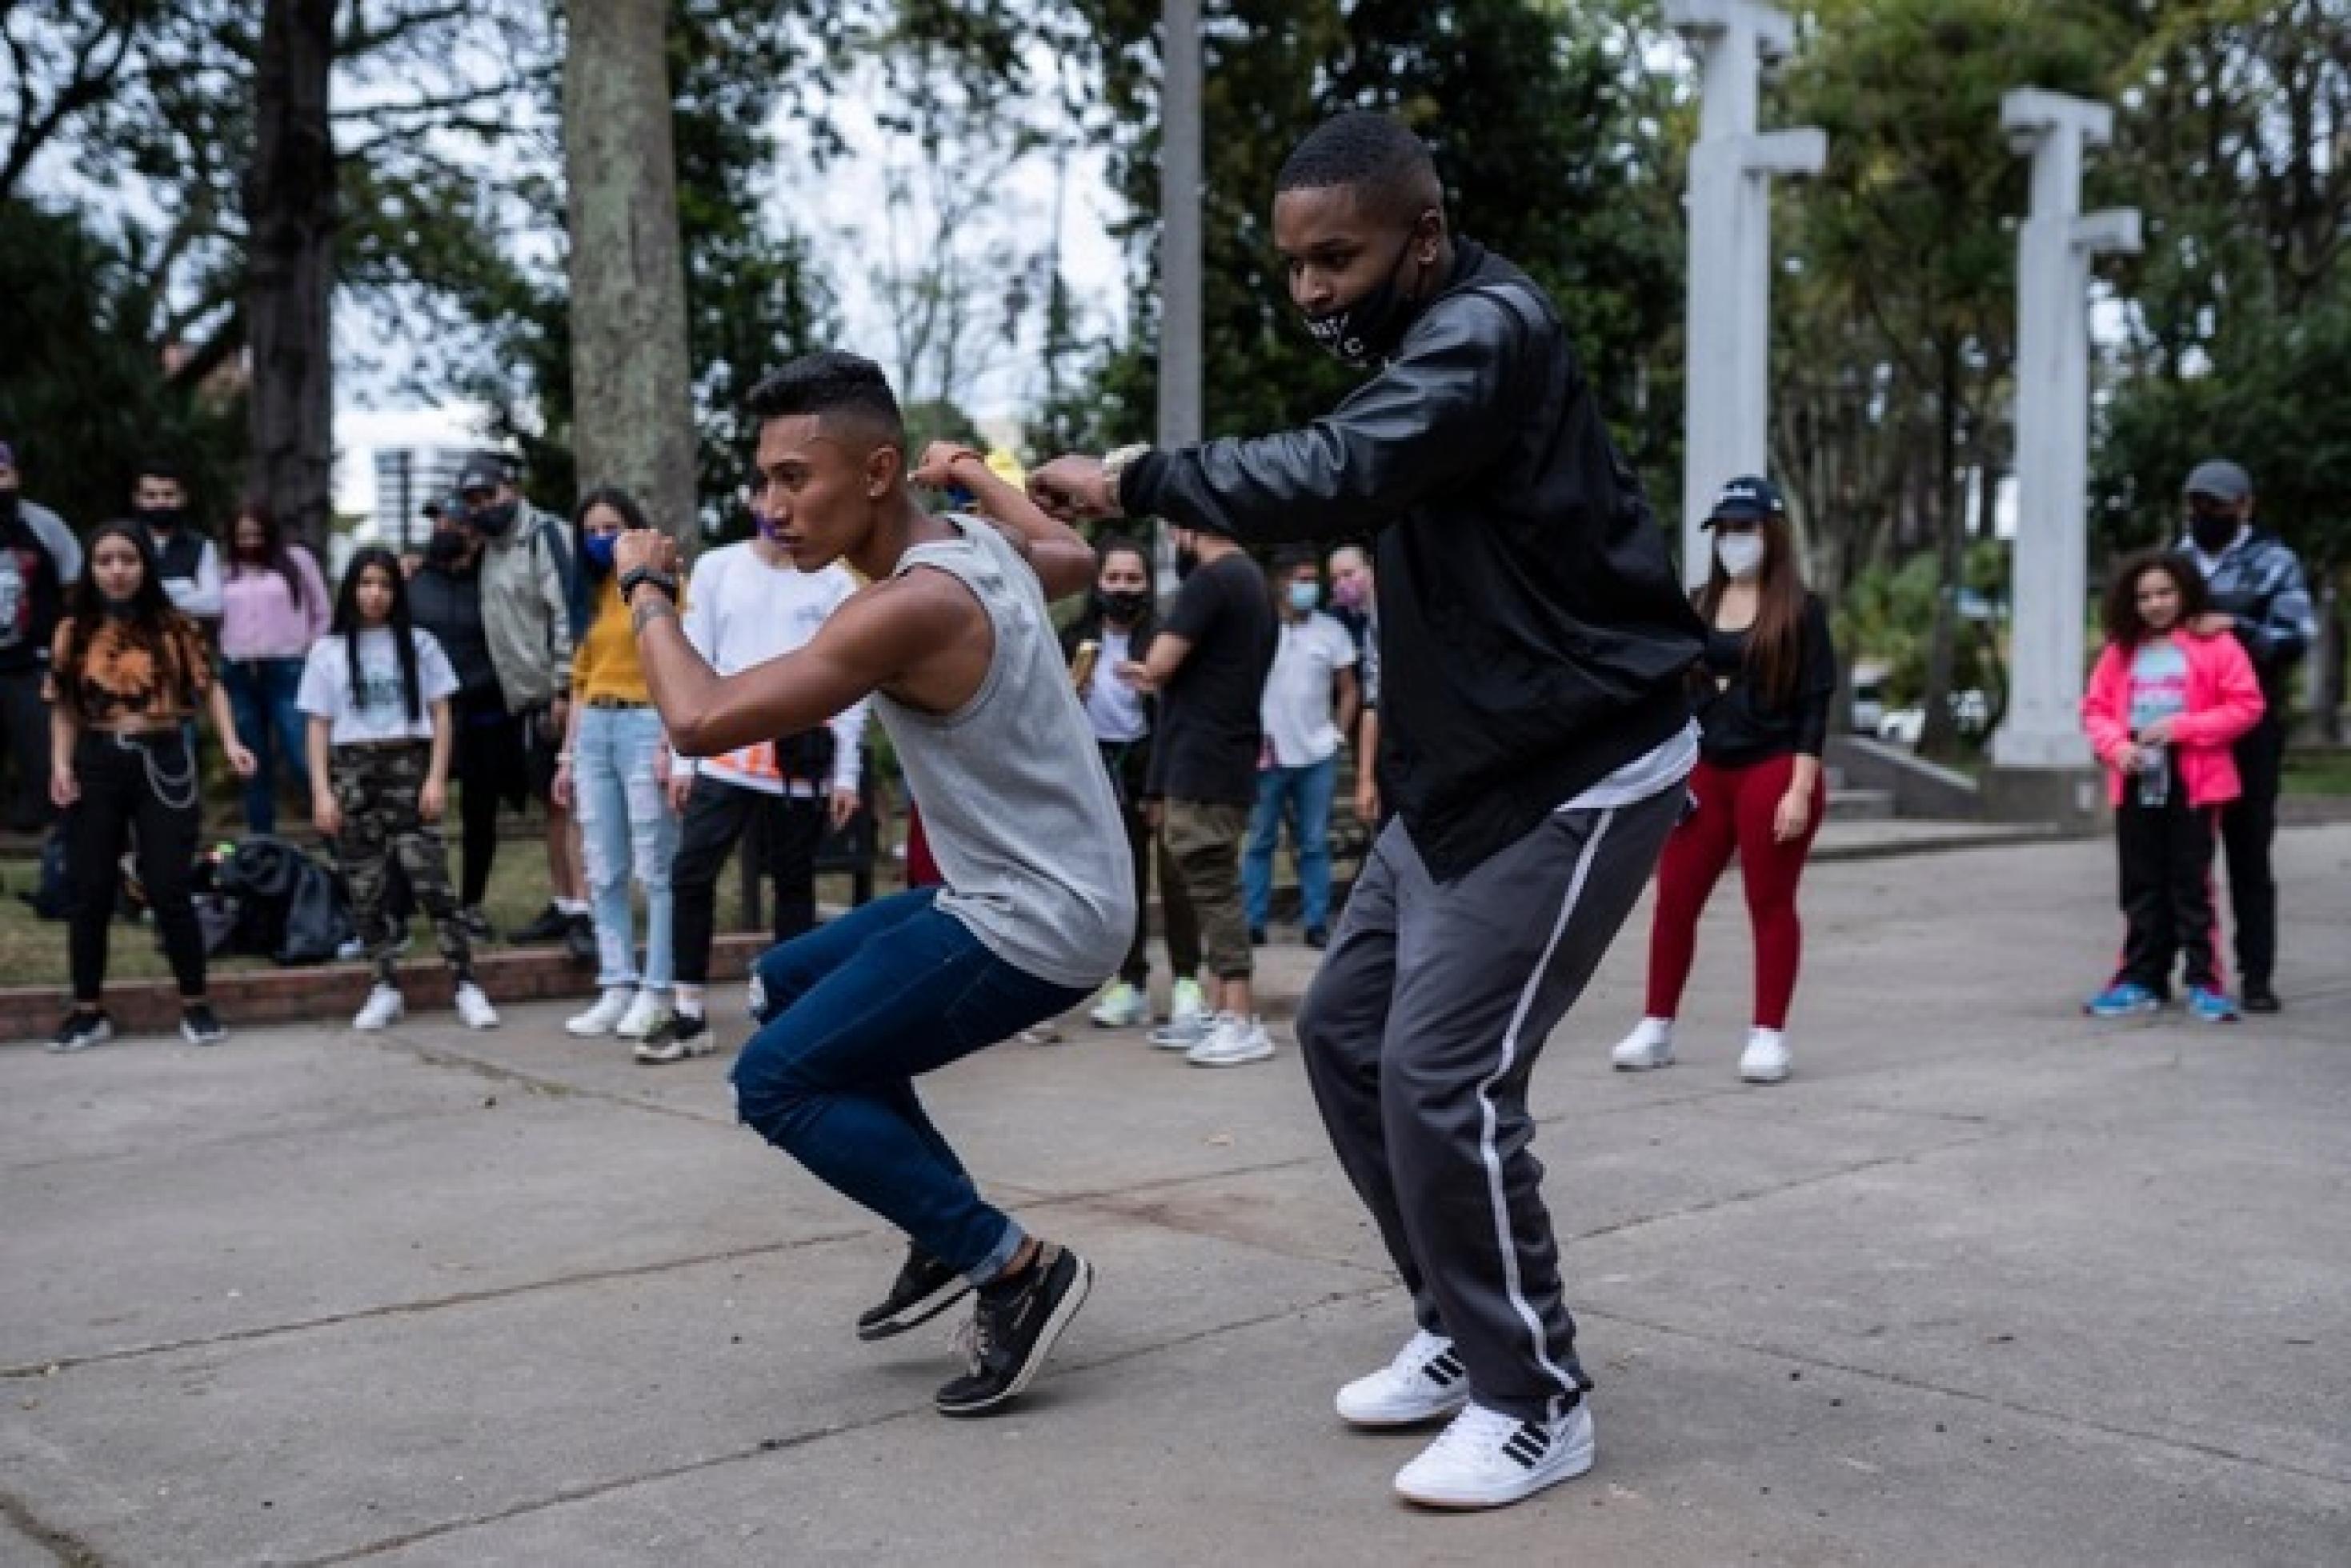 Zwei junge schwarze Männer in Jeans und Traingshose tanzen auf einem öffentlichen Platz. Der eine trägt einen verrutschten Mundschutz, der andere gar keinen. Im Hintergrund sieht man Zuschauer*innen.